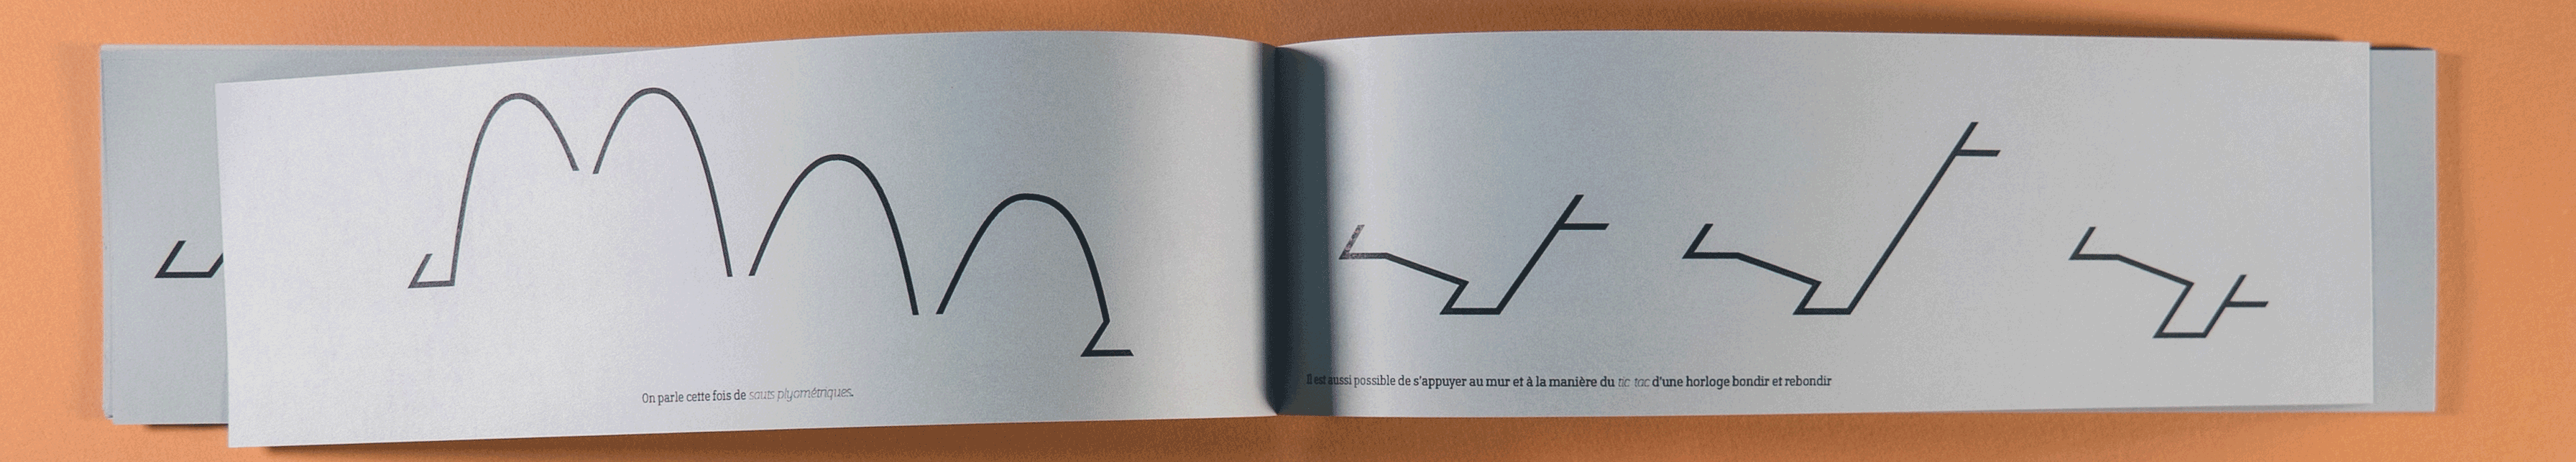 Adel Zeghoudi Boumehdi typark typographie édition design graphique création parkour